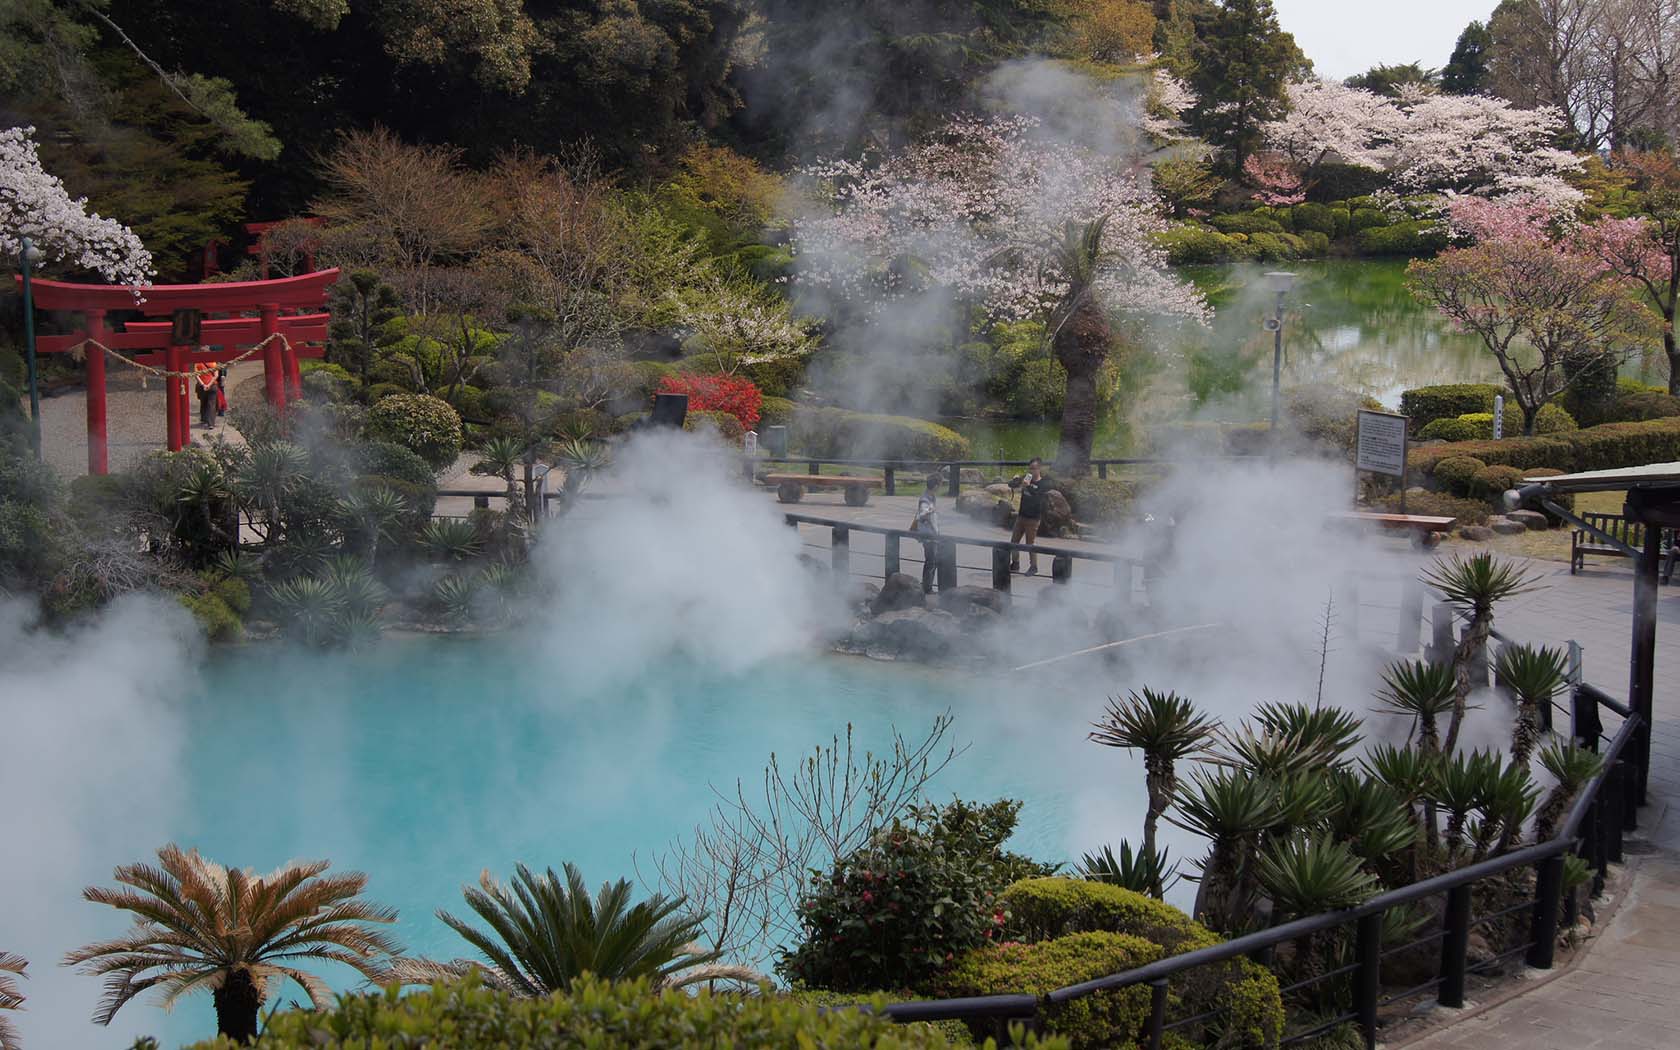 Hot Springs in Beppu, Japan